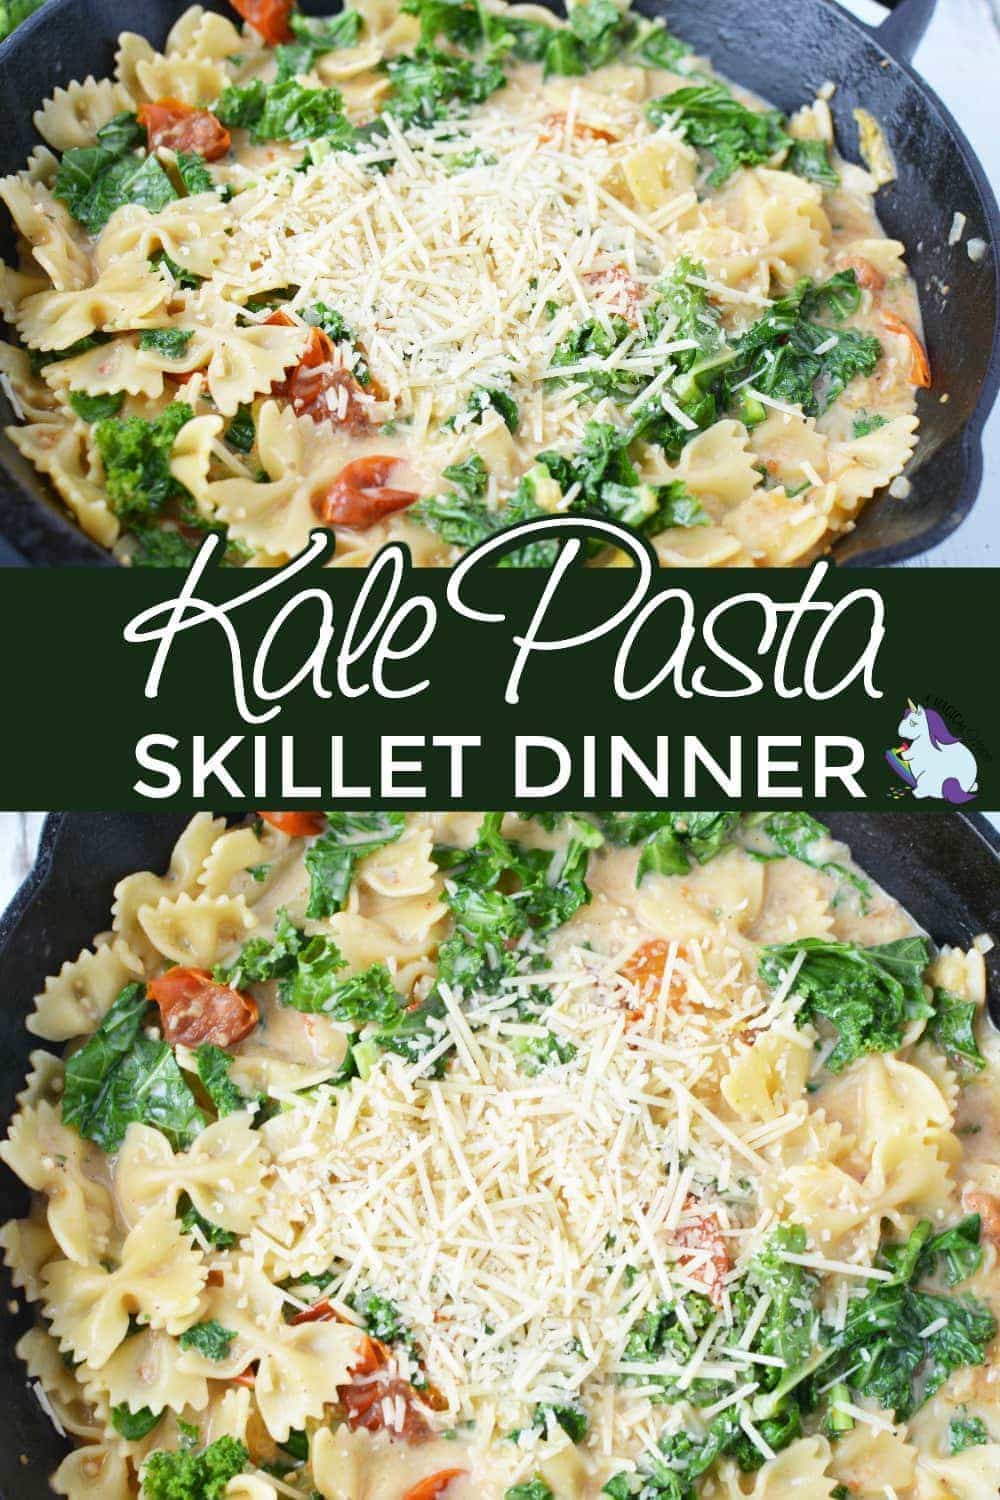 Kale pasta dinner in a skillet